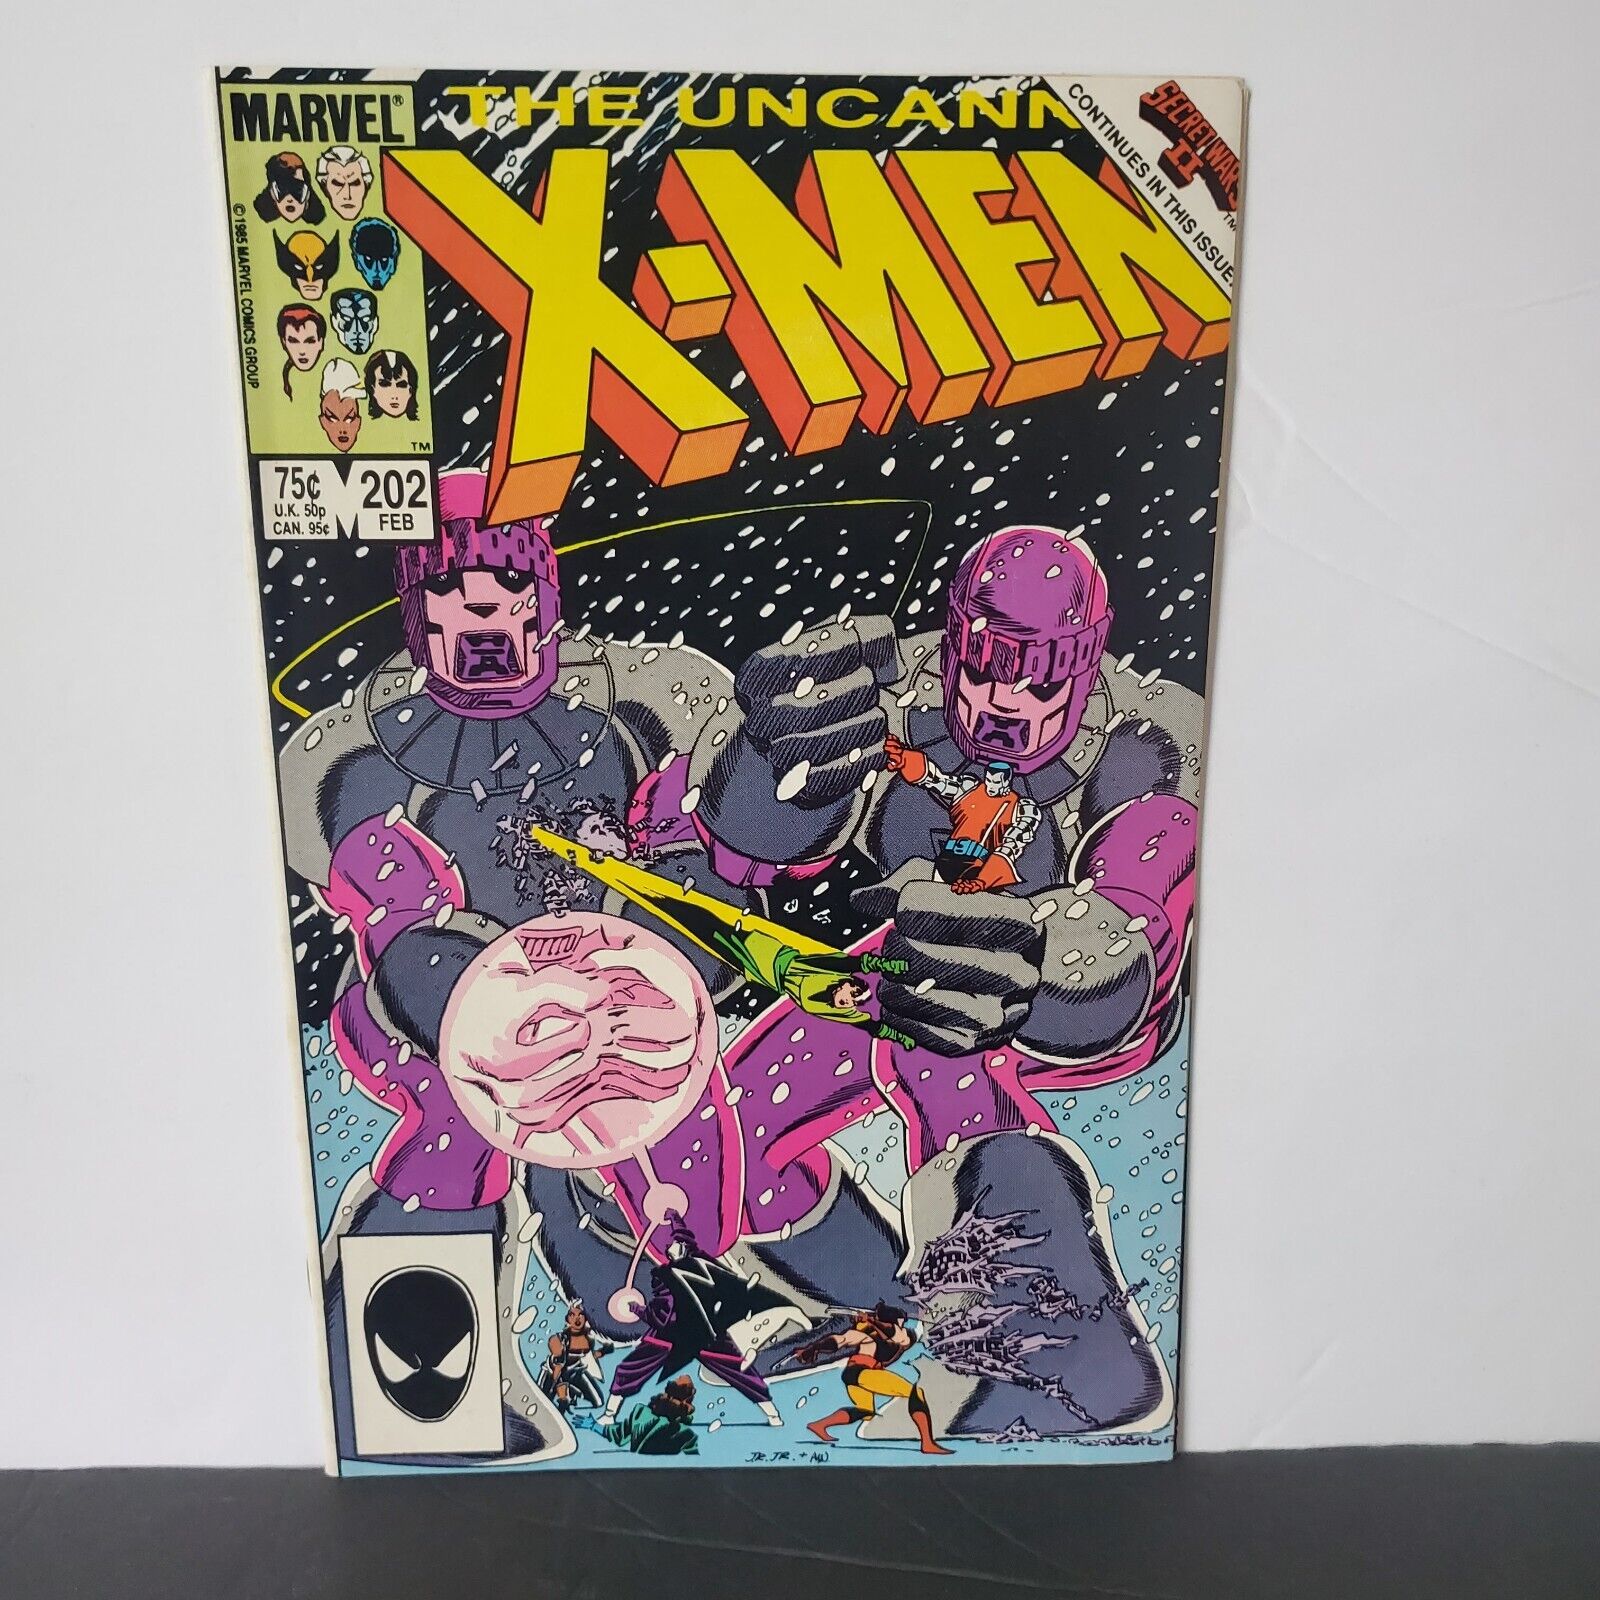 UNCANNY X-MEN #202 MARVEL COMICS 1986 SECRET WARS II JOHN ROMITA JR